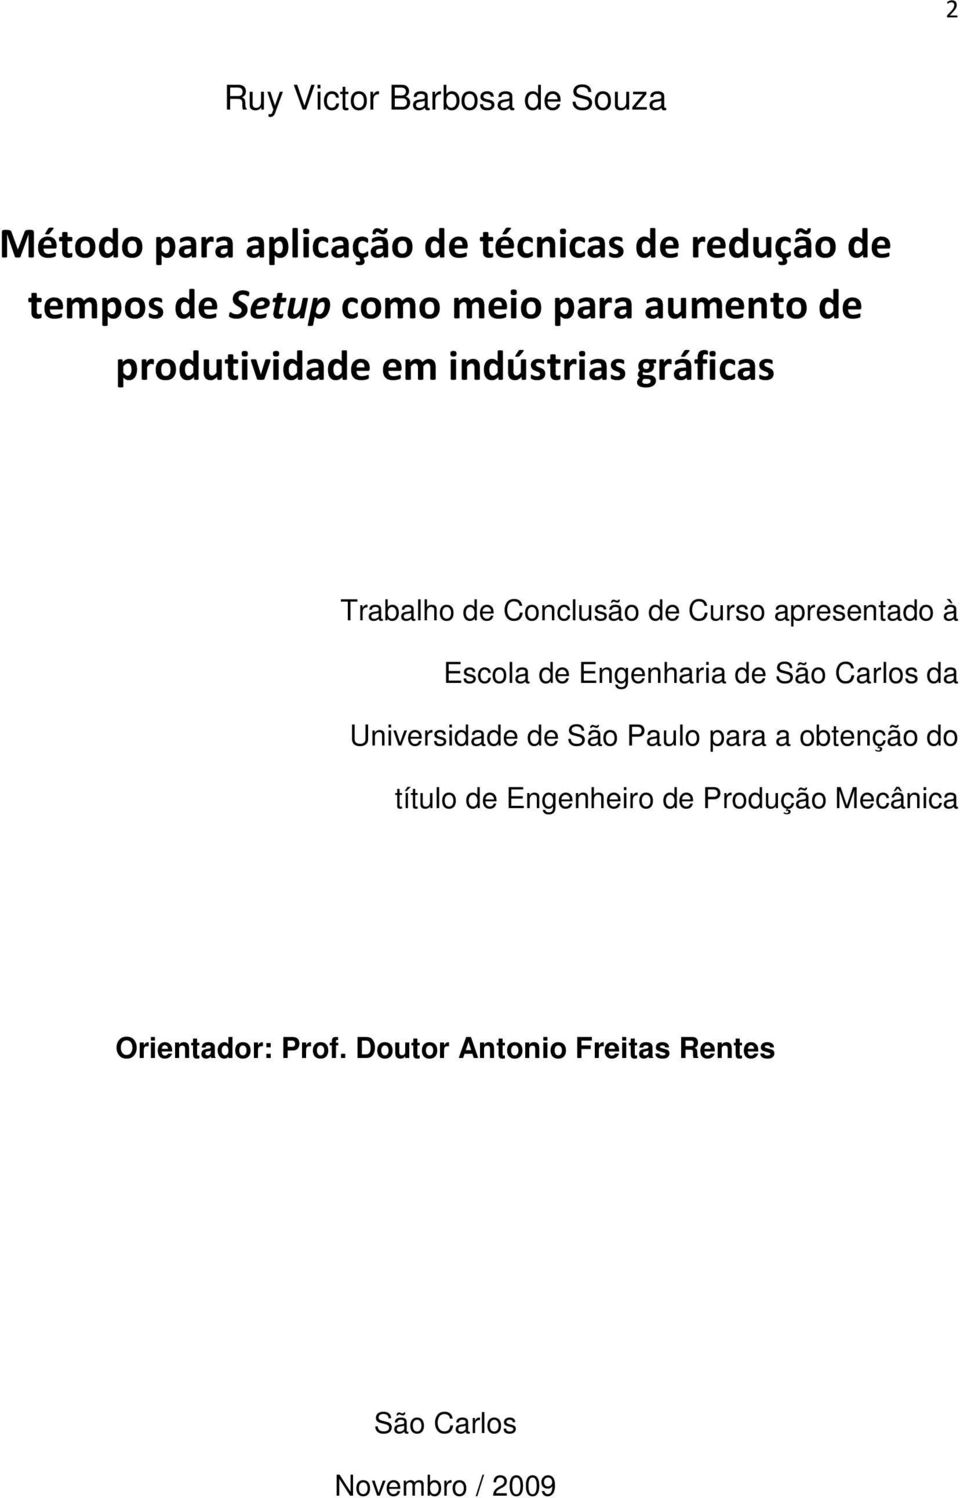 à Escola de Engenharia de São Carlos da Universidade de São Paulo para a obtenção do título de